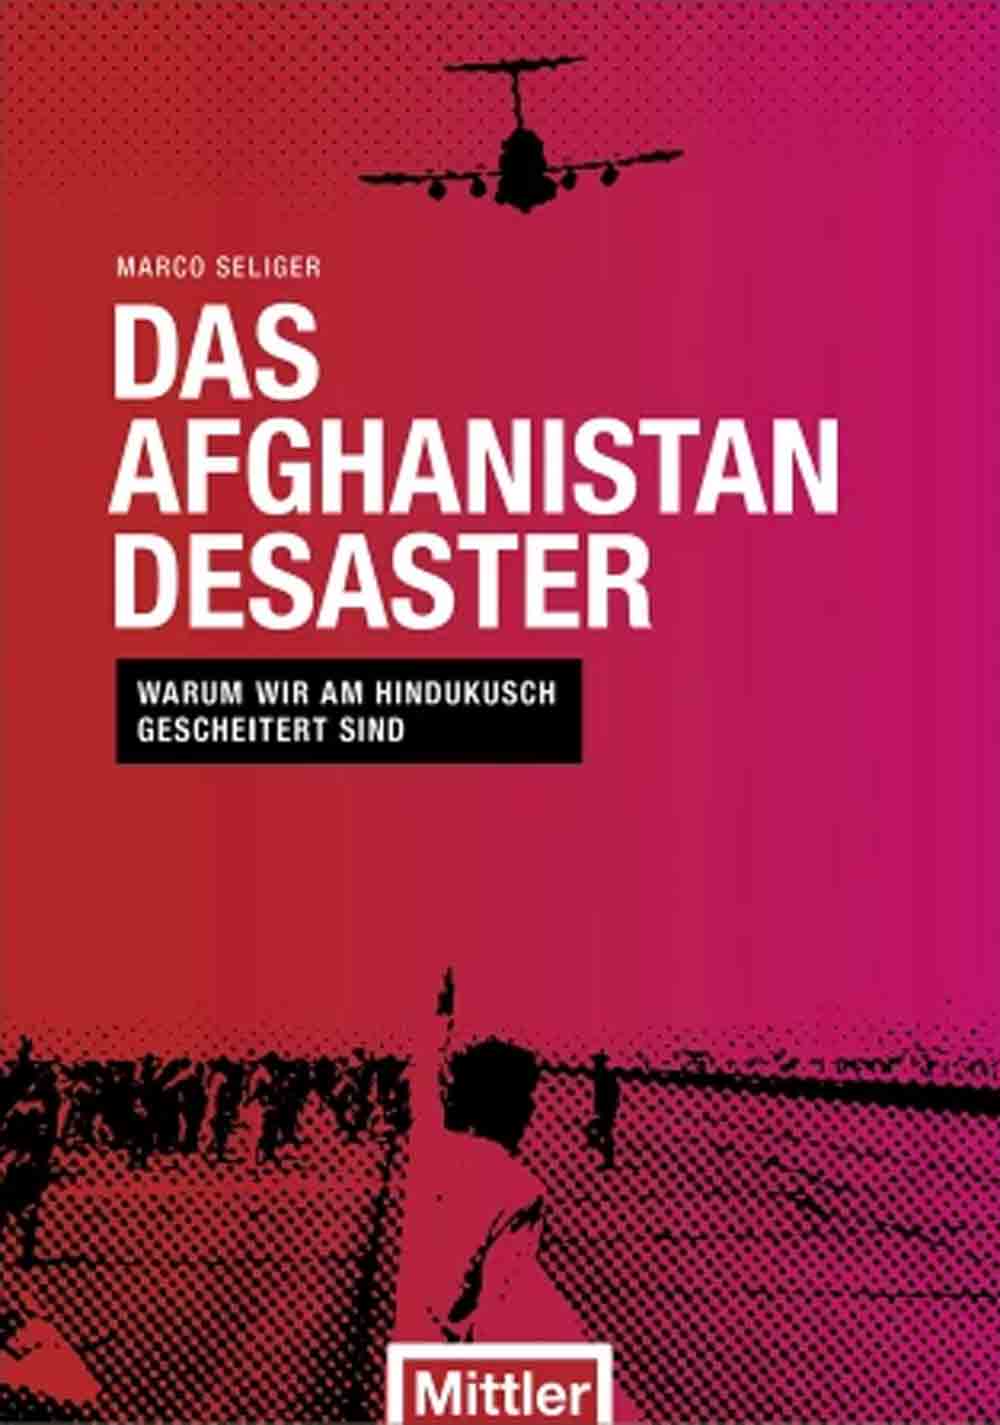 Anzeige: Lesetipps für Gütersloh, Marco Seliger, »Das Afghanistan Desaster«, online bestellen